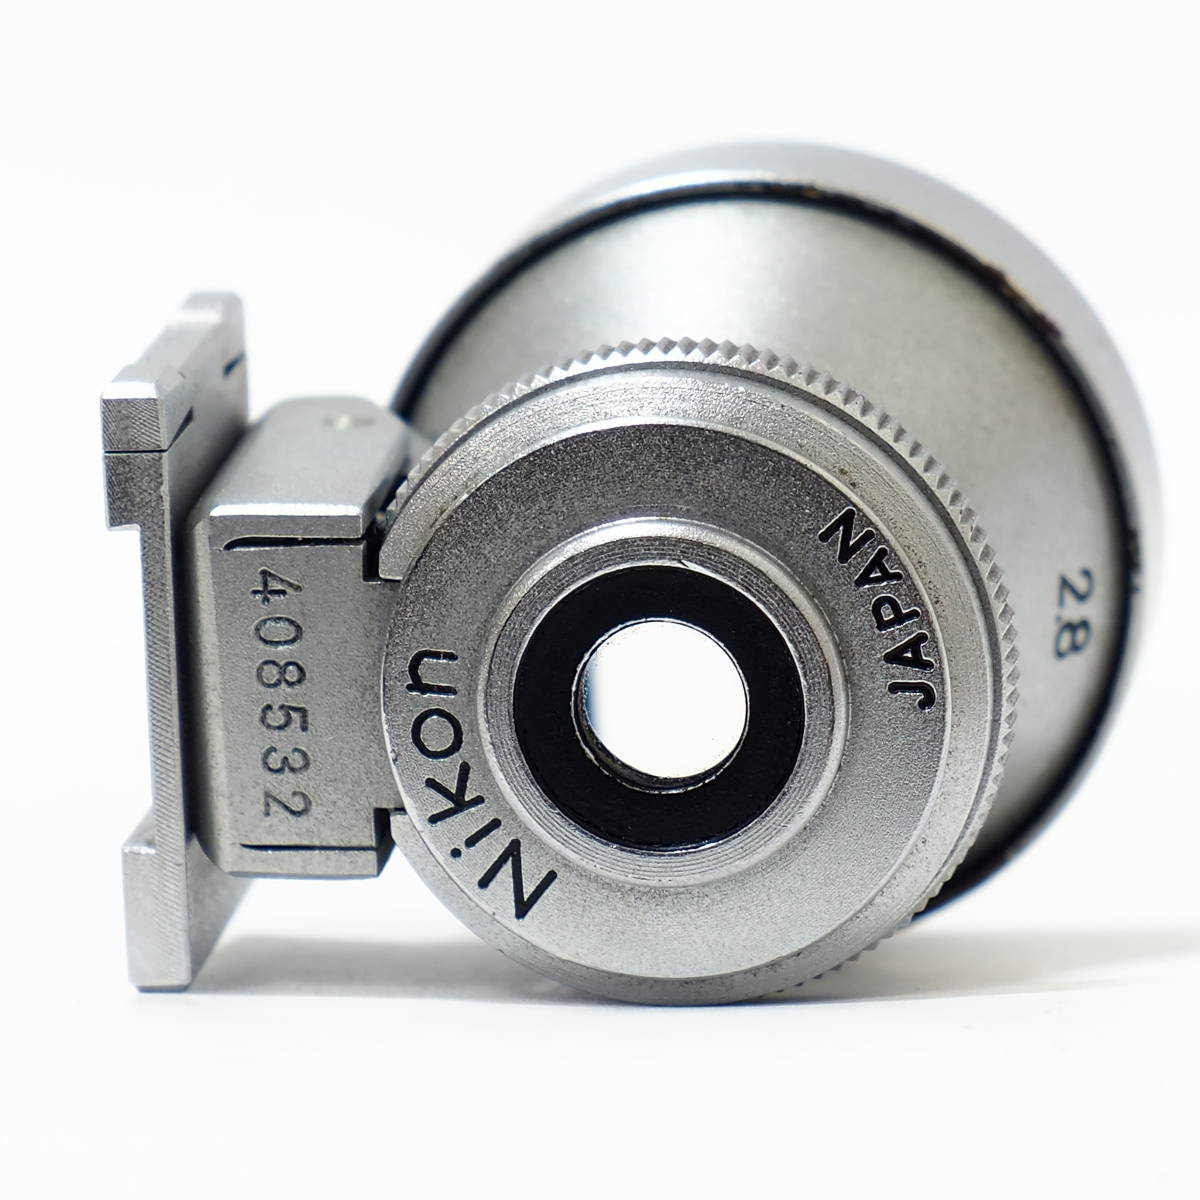 Nikon View Finder 2.8cm 28mm for S2/S3 LEICA Nicca NIKKOR Wide by Nippon Kogaku JAPAN 日本光学 ニコン 光学ビューファインダー 広角_画像5